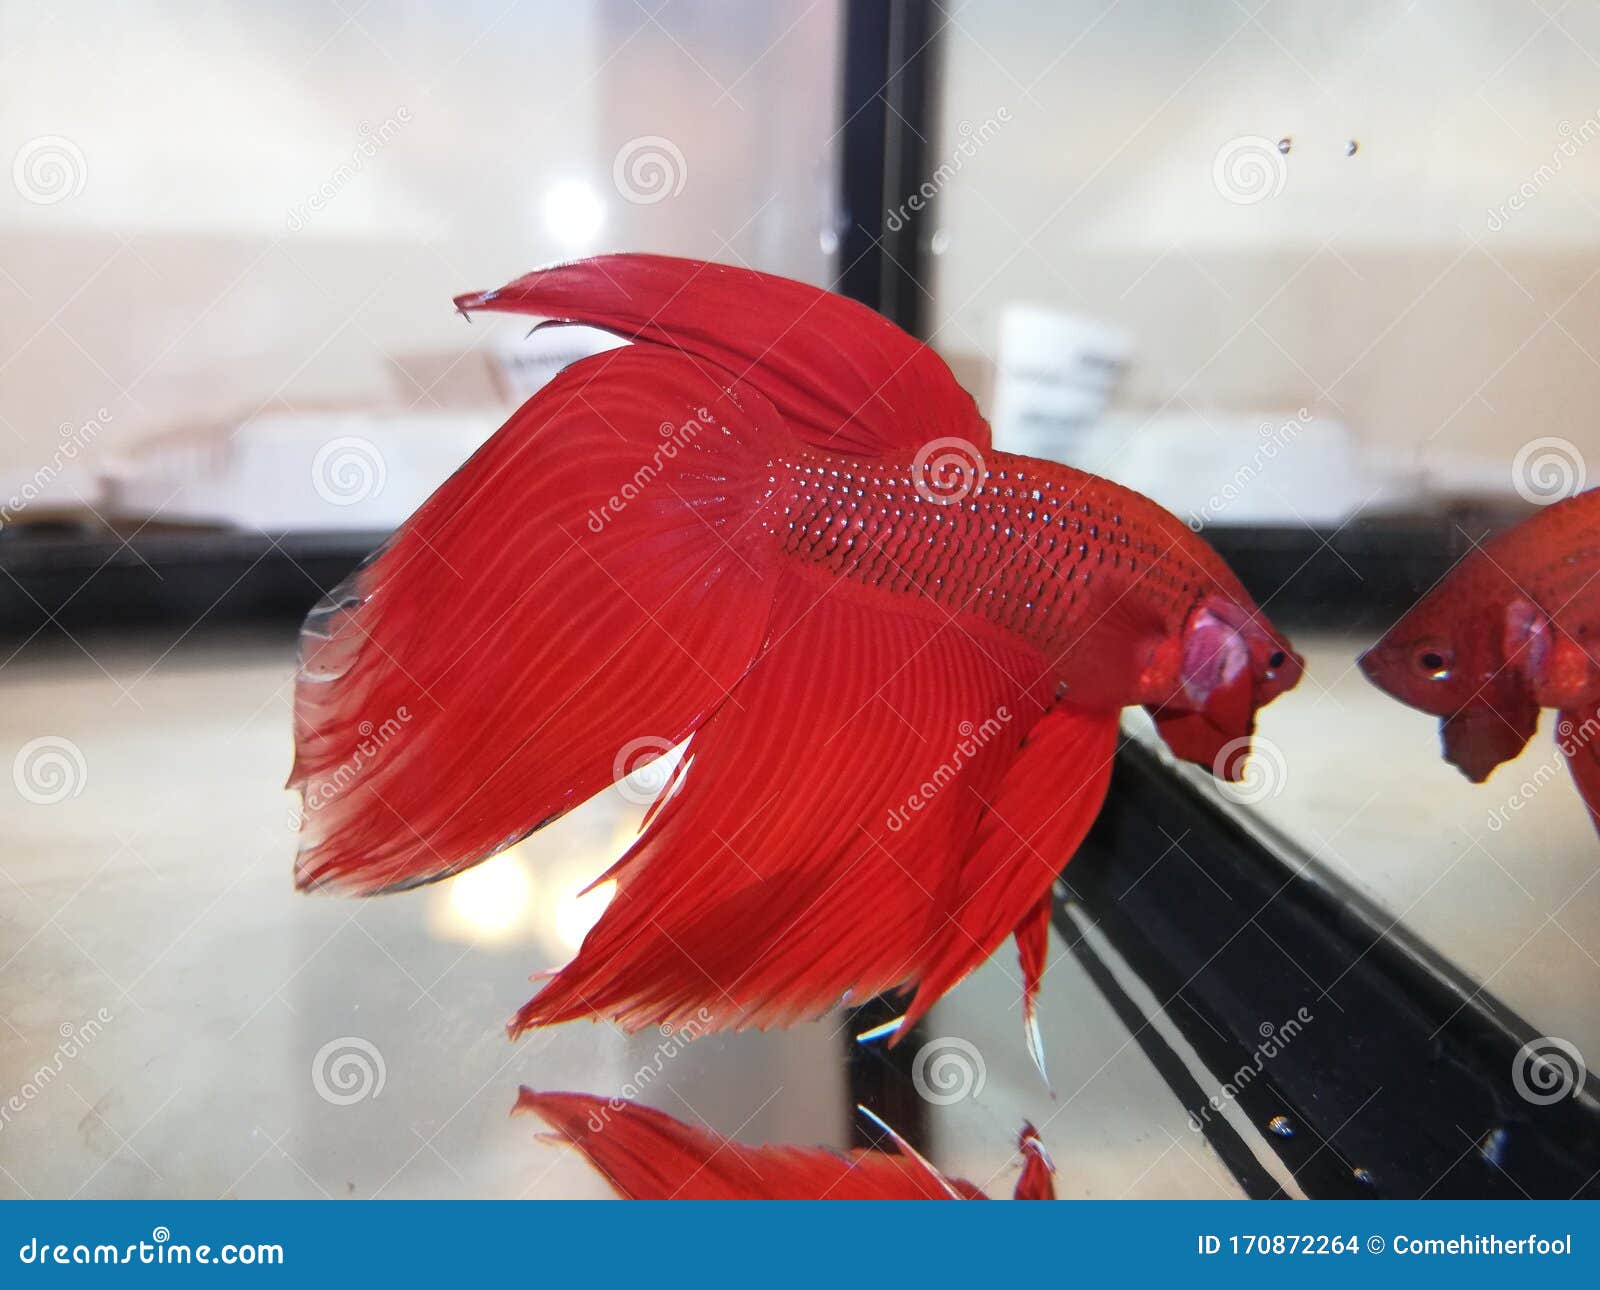 red-male-veiltail-betta-flaring-aquarium-red-male-veiltail-betta-flaring-170872264.jpg